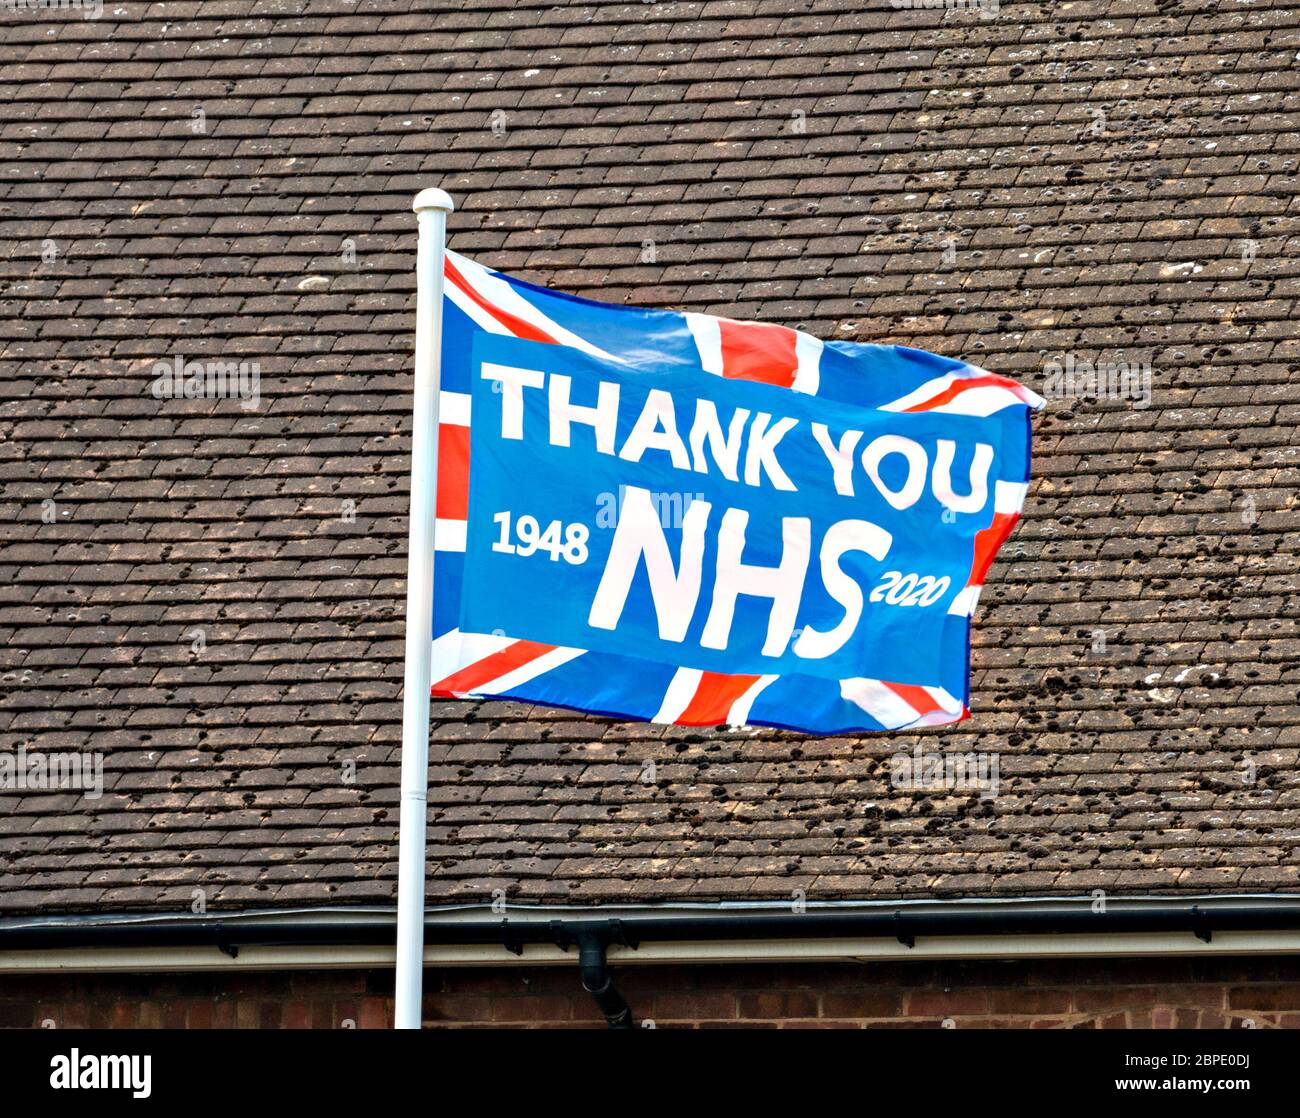 Bandera sindical "Thank you NHS" volando en asta de bandera frente a casa para dar las gracias a NHS durante la pandemia de coronavirus, mayo de 2020, Inglaterra, Reino Unido Foto de stock